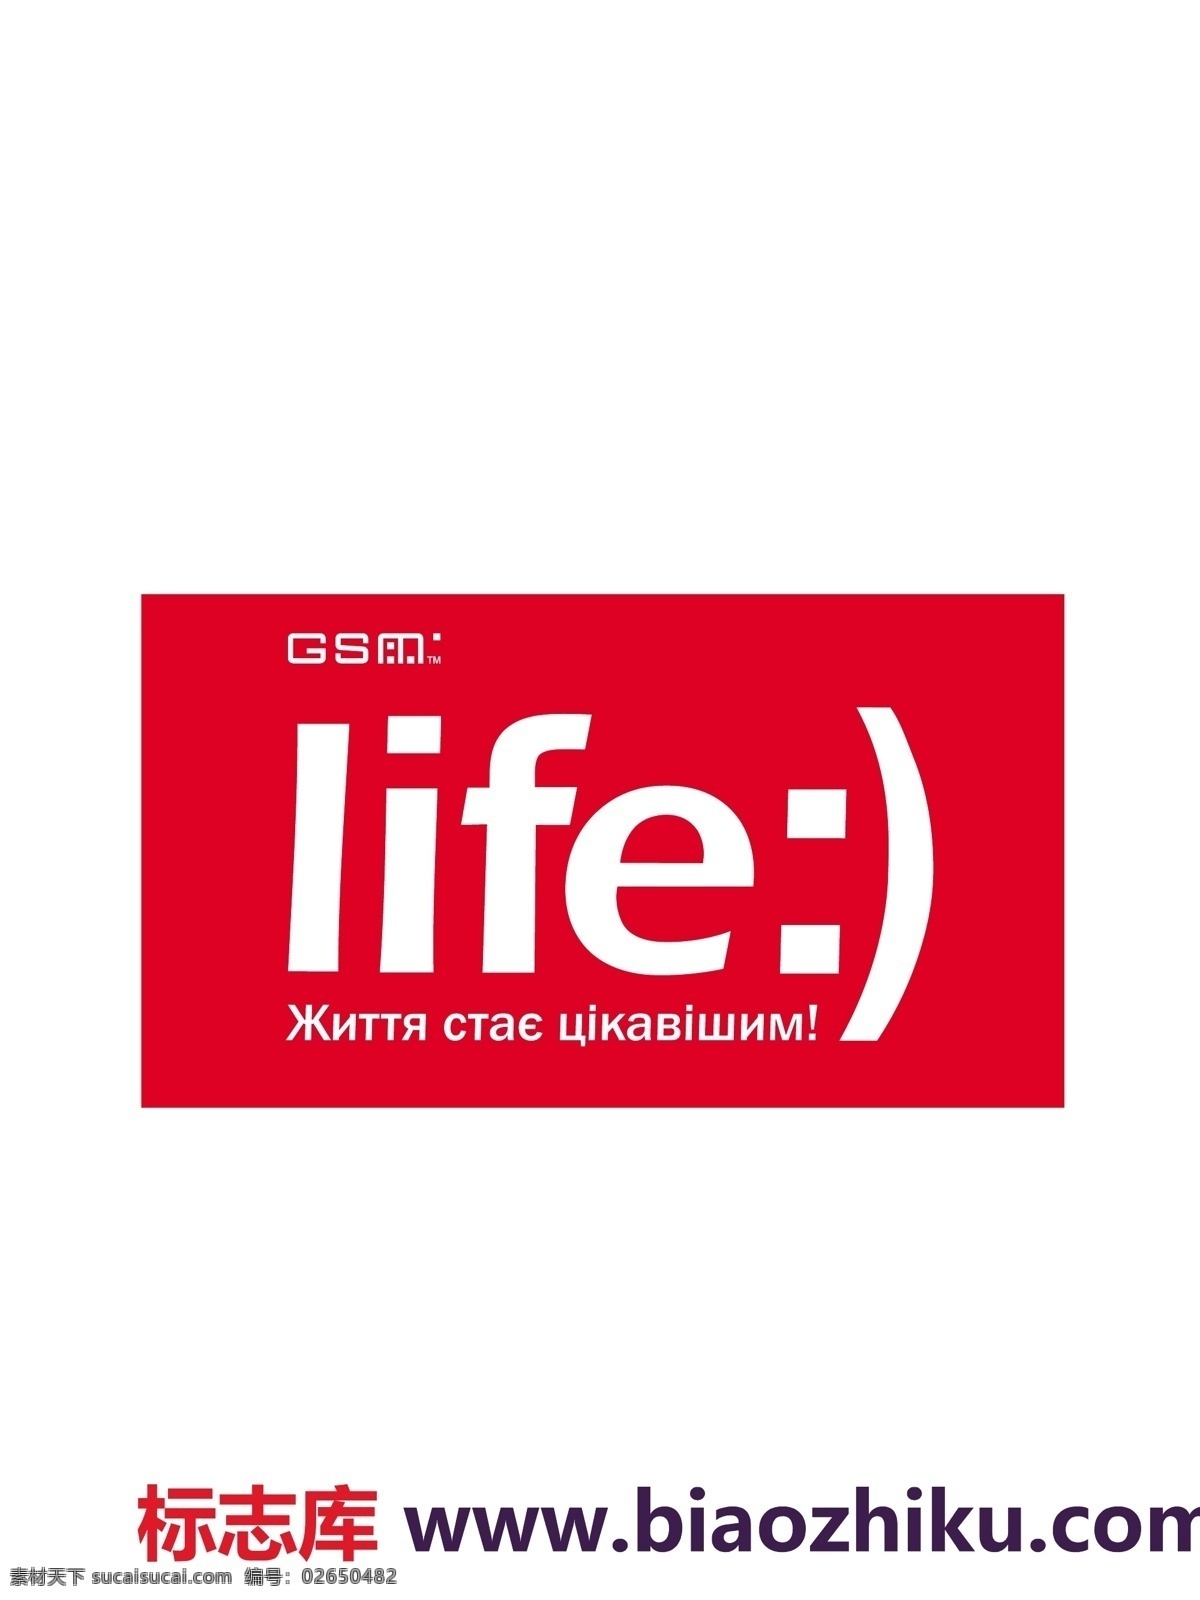 life logo大全 logo 设计欣赏 商业矢量 矢量下载 手机 公司 标志设计 欣赏 网页矢量 矢量图 其他矢量图